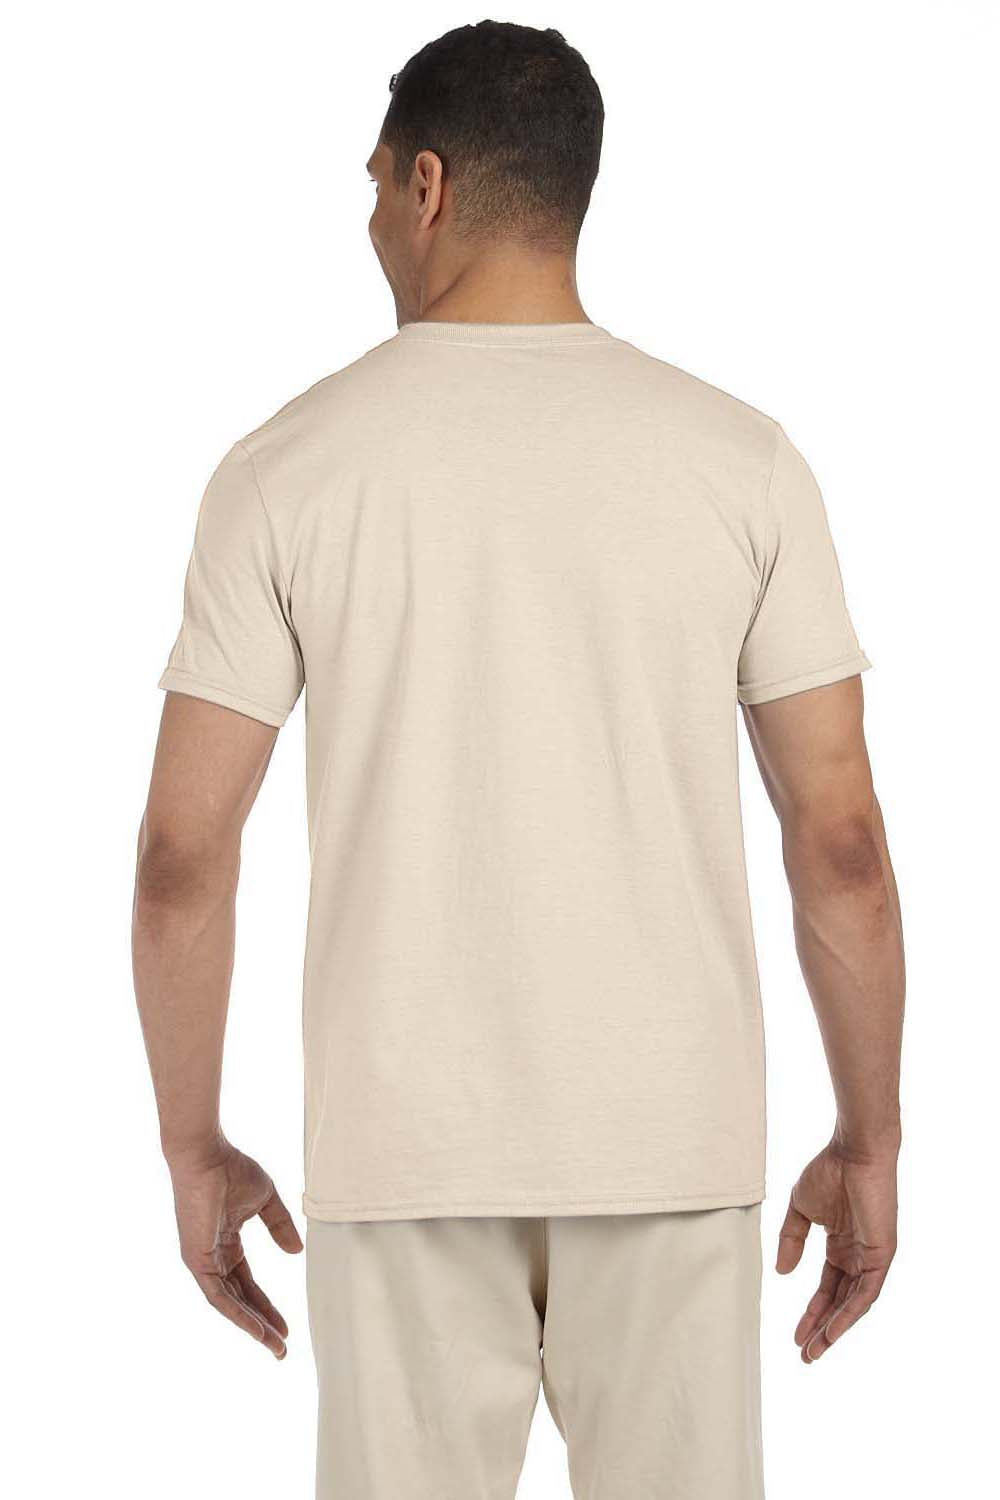 Gildan G640 Mens Softstyle Short Sleeve Crewneck T-Shirt Natural Back